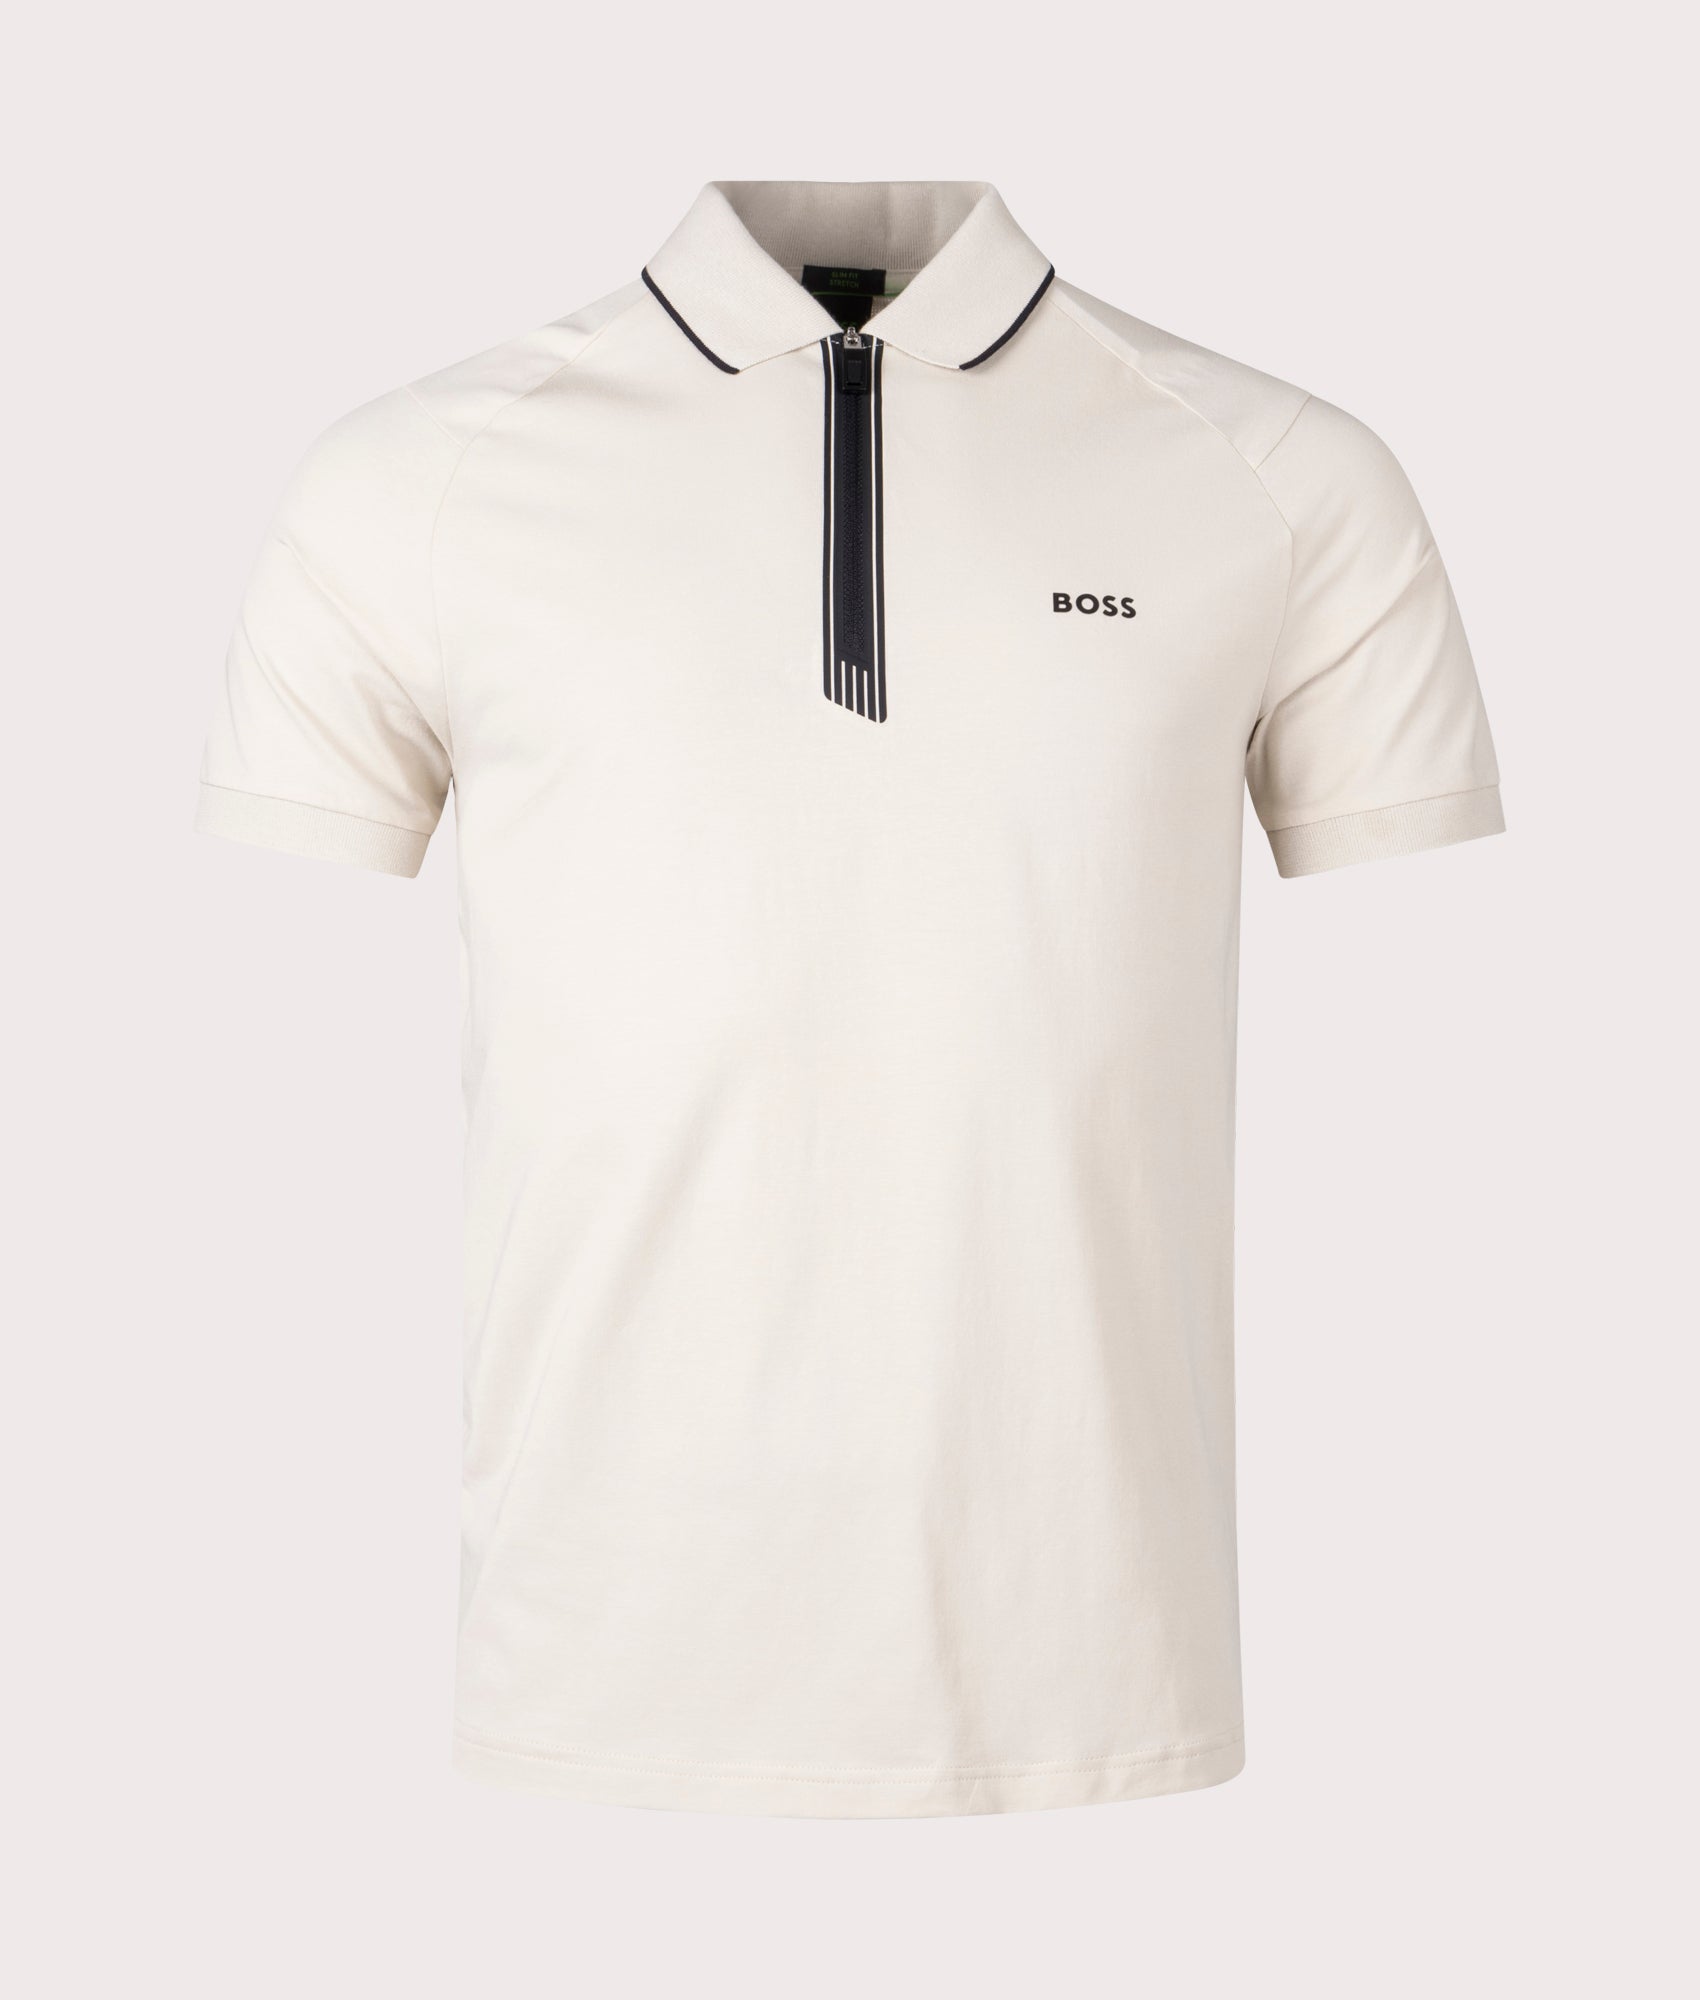 BOSS Mens Philix Zip Plaquet Polo Shirt - Colour: 271 Light Beige - Size: Large